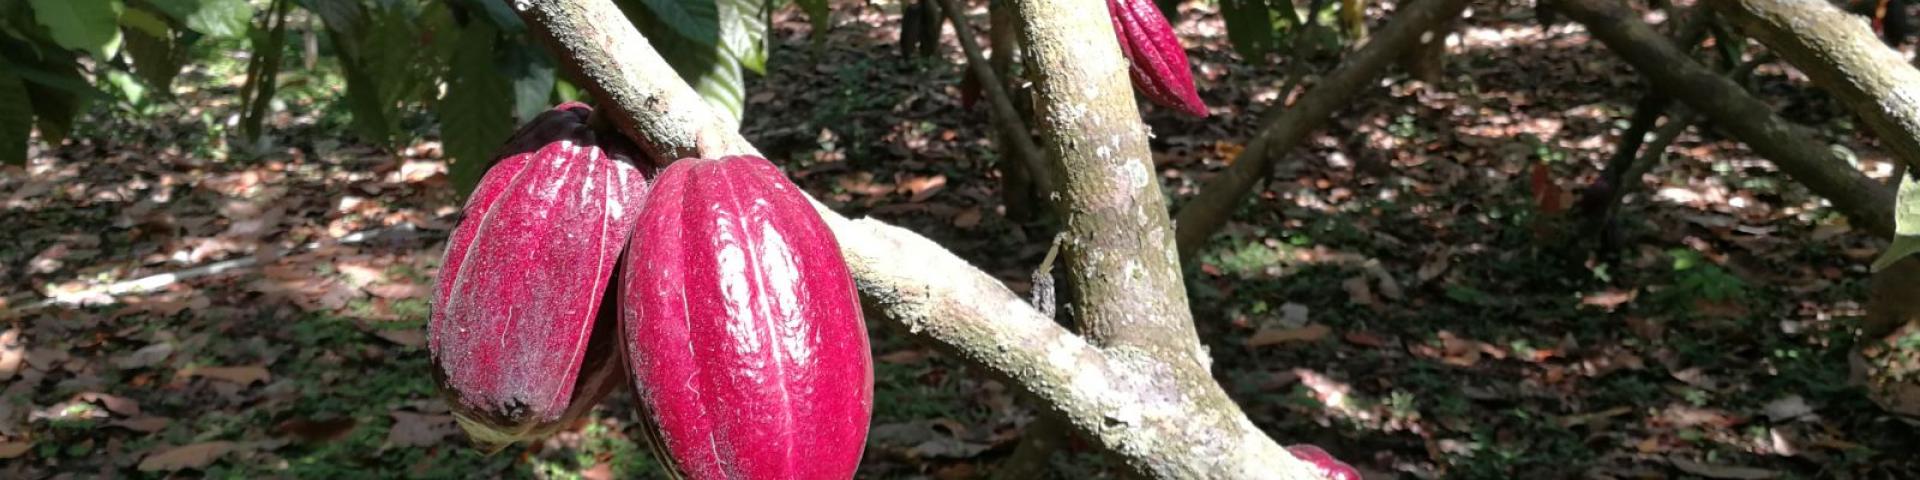 Cacaobeans